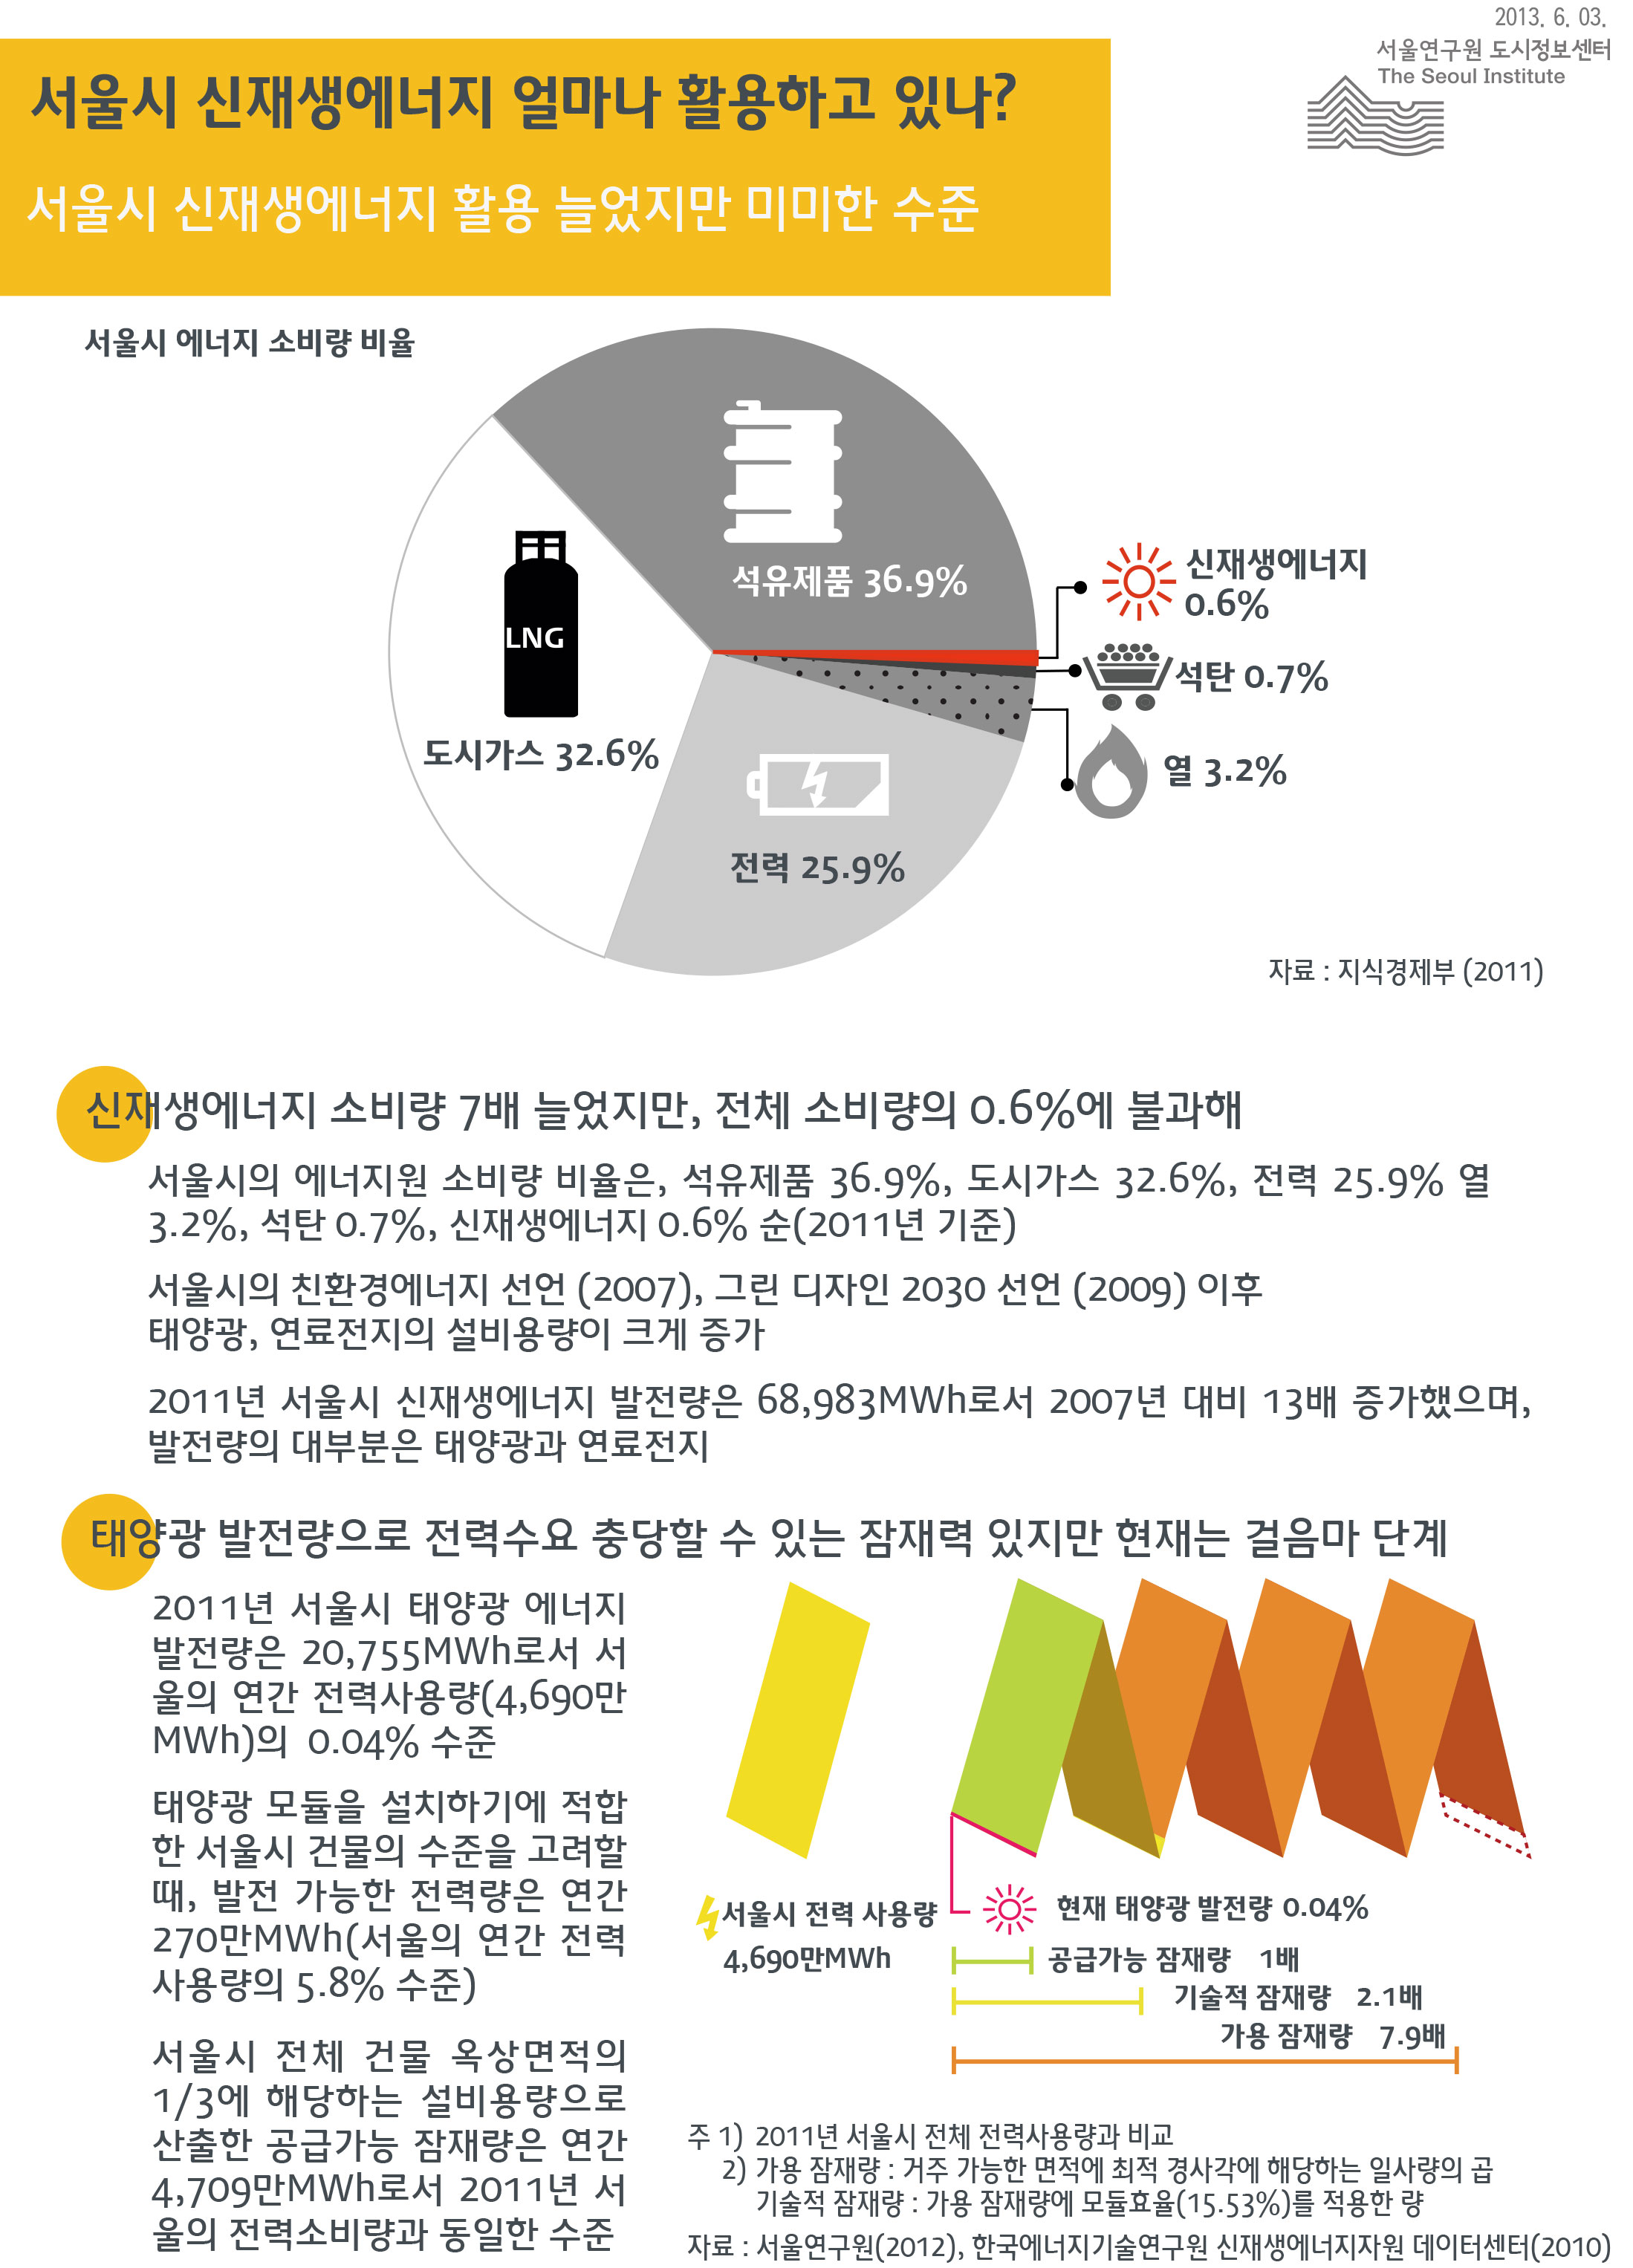 서울시 신재생에너지 얼마나 활용하고 있나? 서울인포그래픽스 제36호 2013년 6월 3일 서울시의 에너지 소비량 비율은, 석유제품 36.9%, 도시가스 32.6%, 전력 25.9% 열 3.2%, 석탄 0.7%, 신재생에너지 0.6% 순(2011년 기준), 서울시의 친환경에너지 선언 (2007), 그린 디자인 2030 선언 (2009) 이후 태양광, 연료전지의 설비용량이 크게 증가, 2011년 서울시 신재생에너지 발전량은 68,983MWh로서 2007년 대비 13배 증가했으며, 발전량의 대부분은 태양광과 연료전지임으로 정리될 수 있습니다. 인포그래픽으로 제공되는 그래픽은 하단에 표로 자세히 제공됩니다.